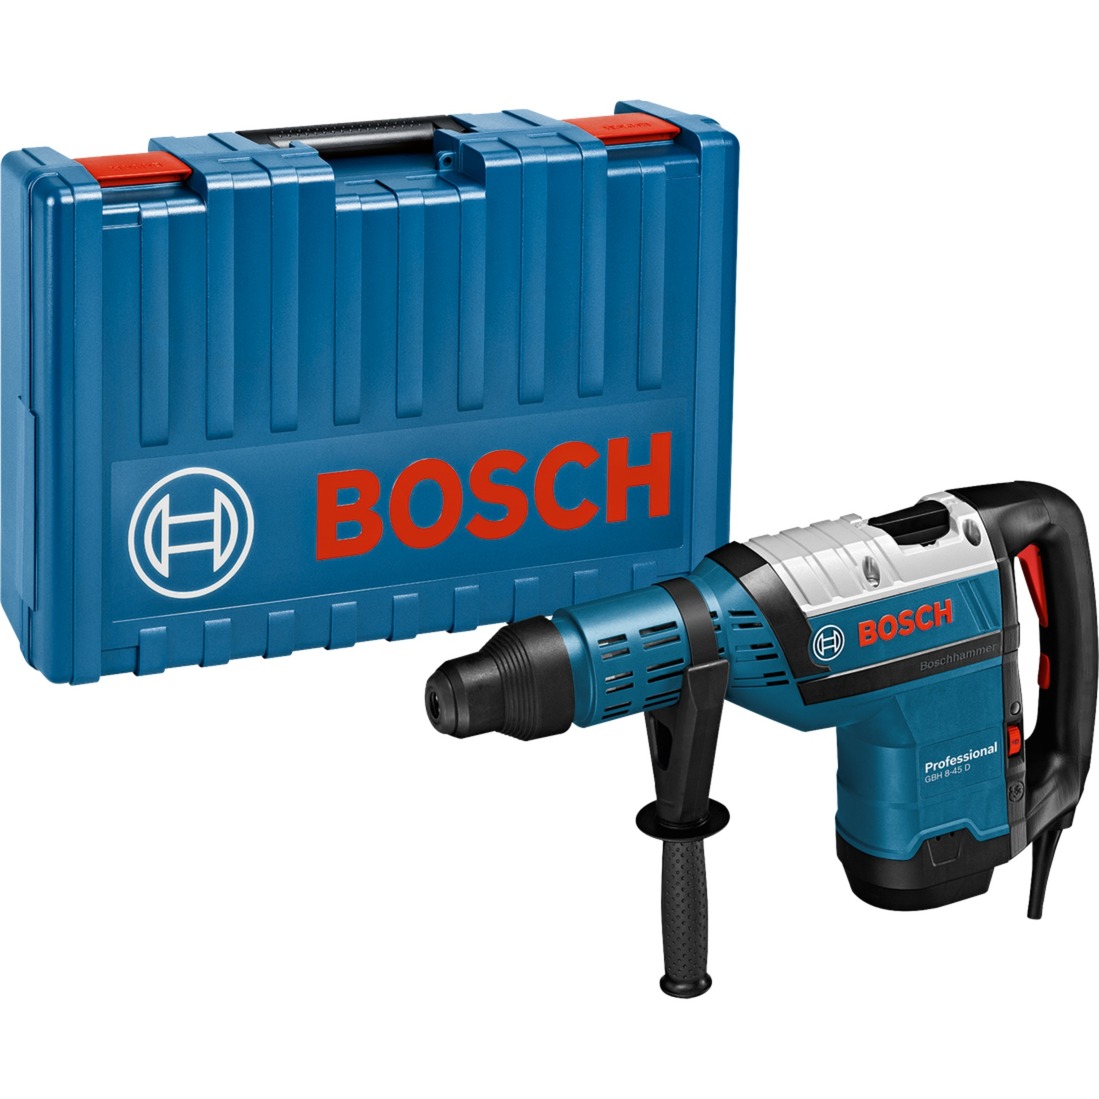 Bohrhammer GBH 8-45 D Professional von Bosch